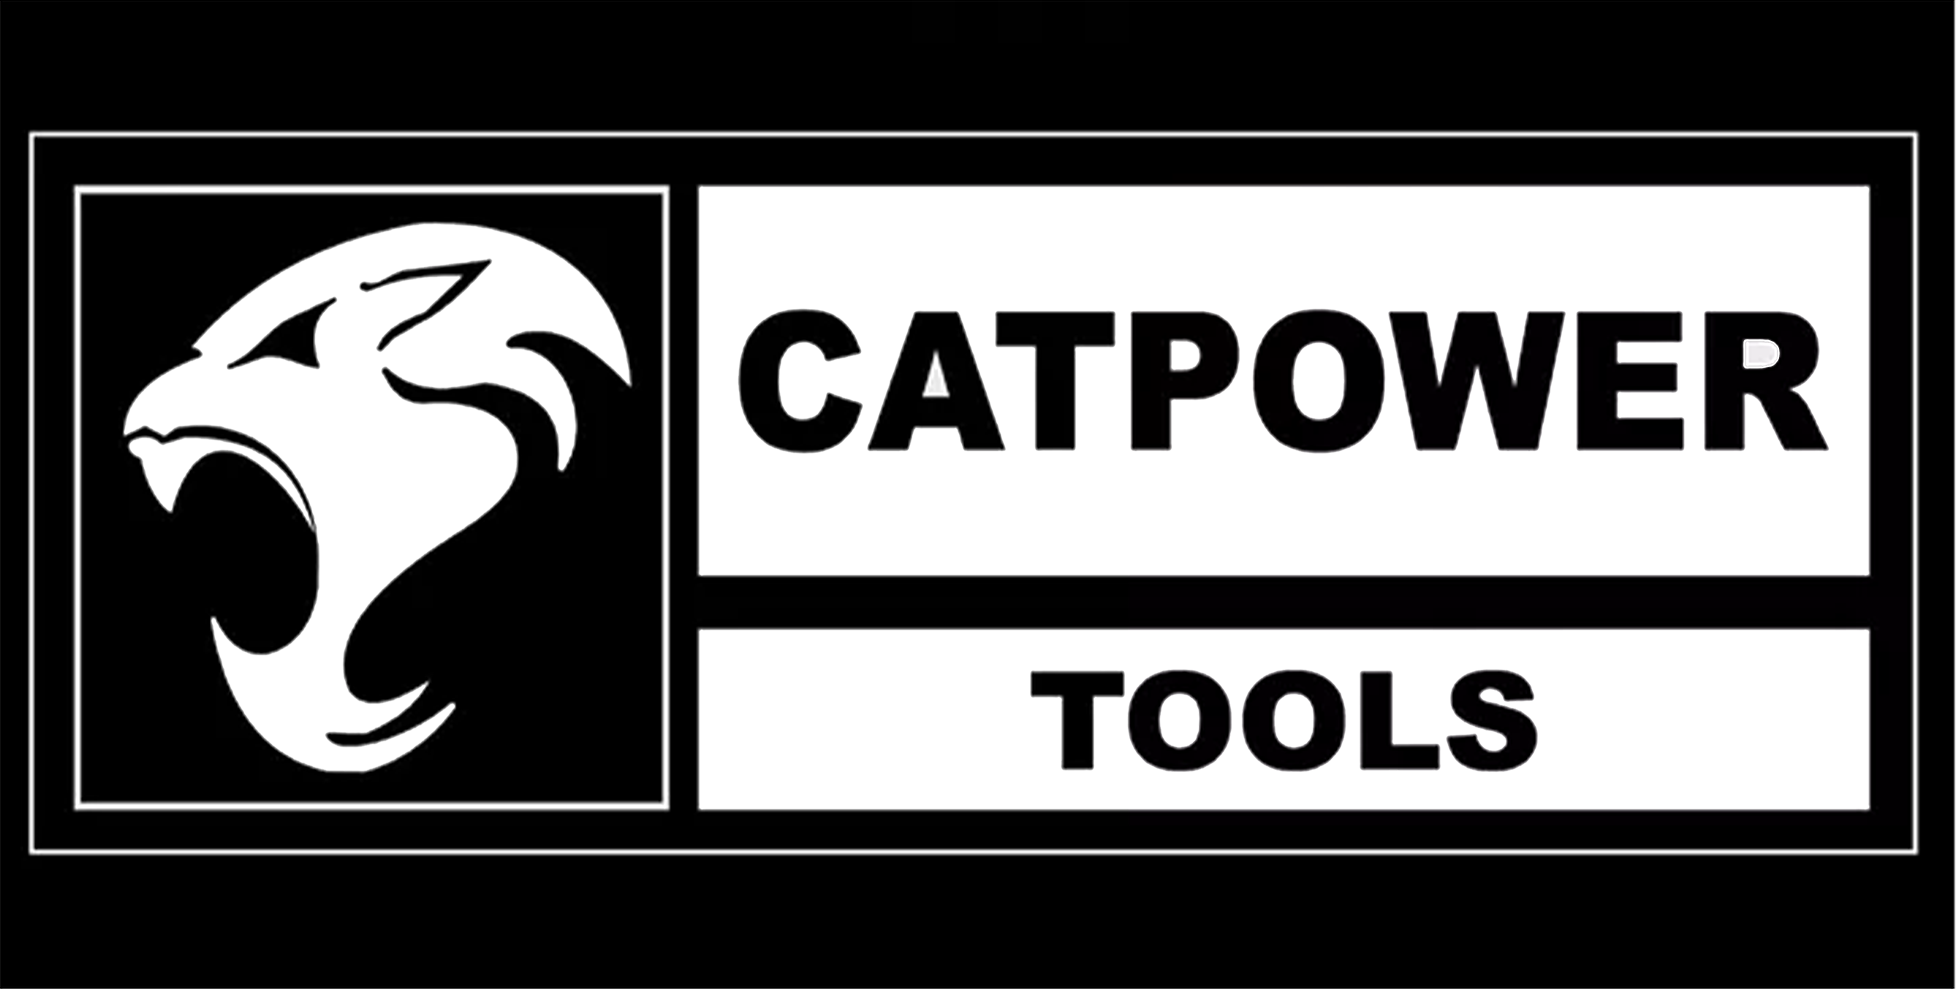 Catpower-Catpower